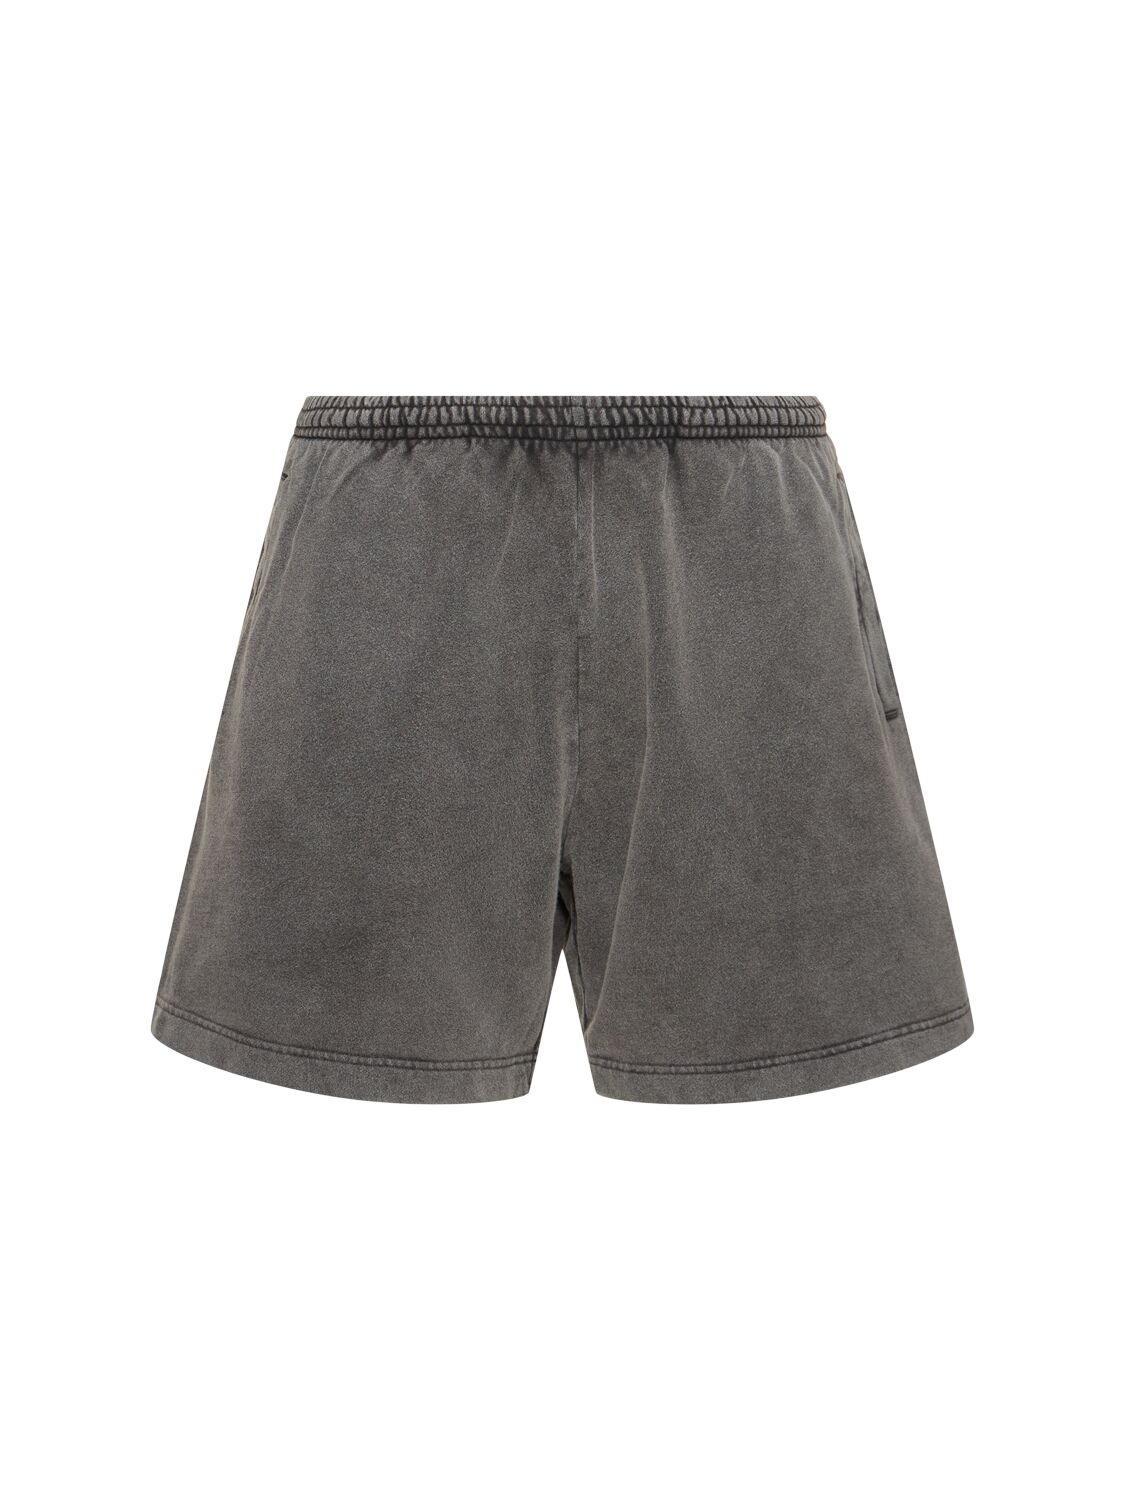 Rego Vintage Cotton Sweat Shorts